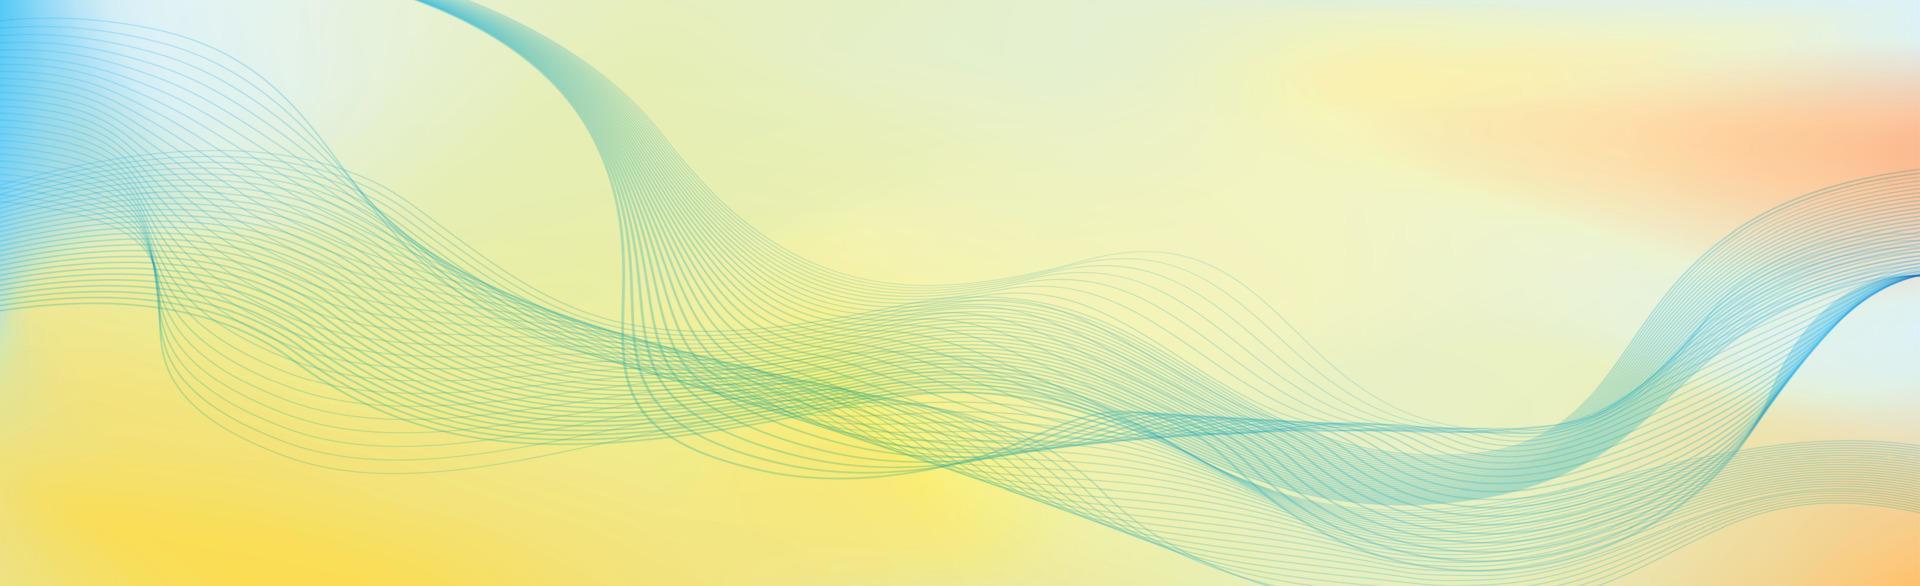 panorâmico colorido luz abstrato elegante multi fundo com linhas onduladas - vetor